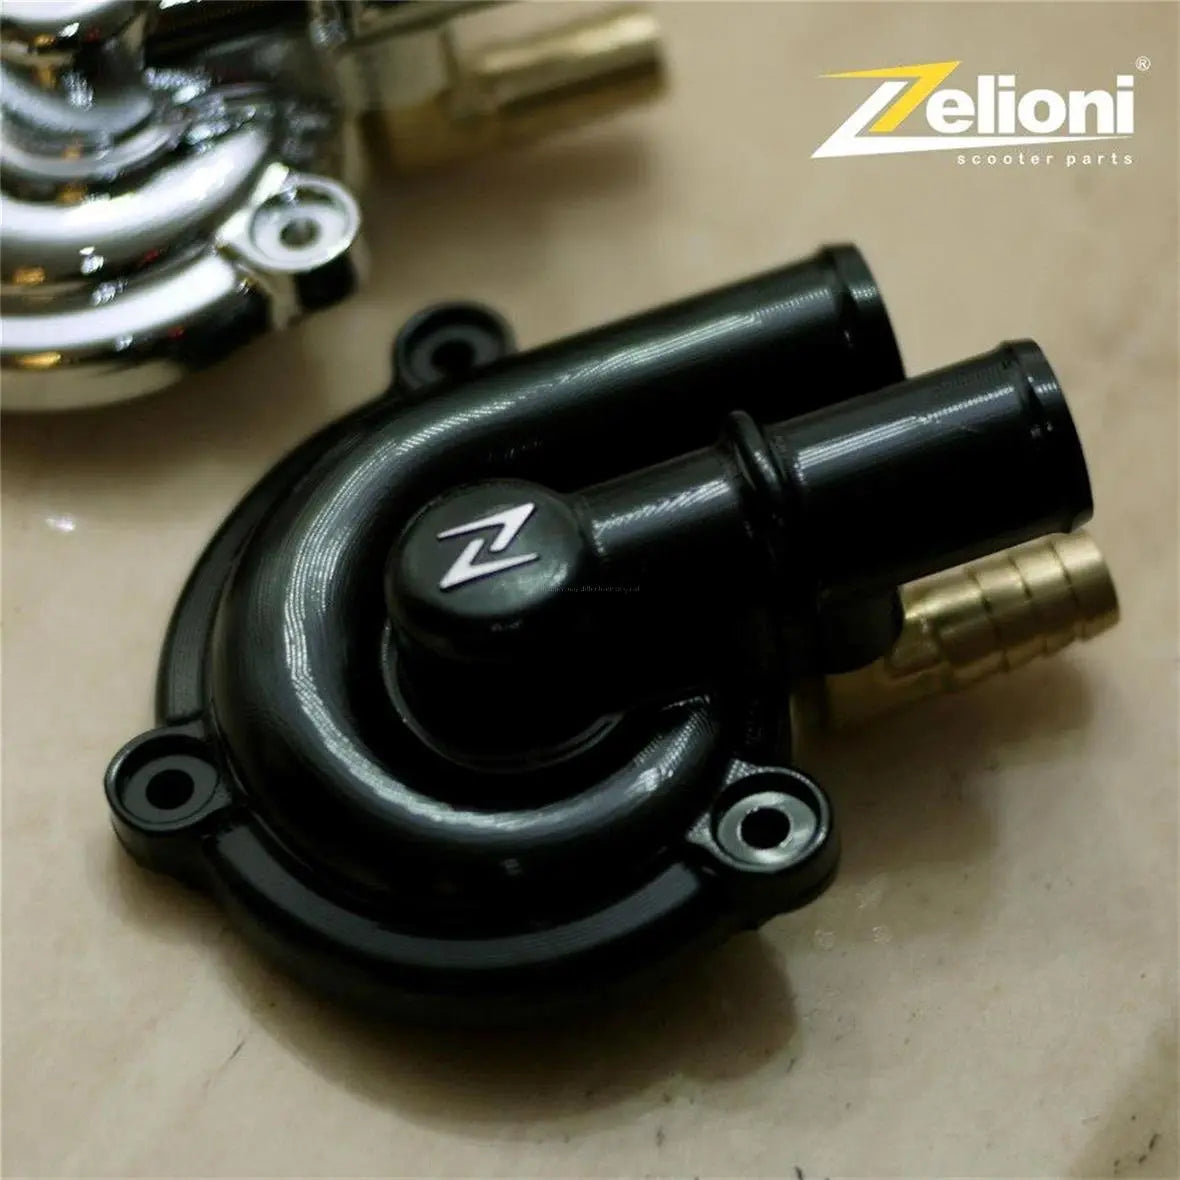 Cover Water Pump aluminium CNC ZELIONI | Vespa GTS Models 125-300ccm Zelioni 169.95 Falan Parts